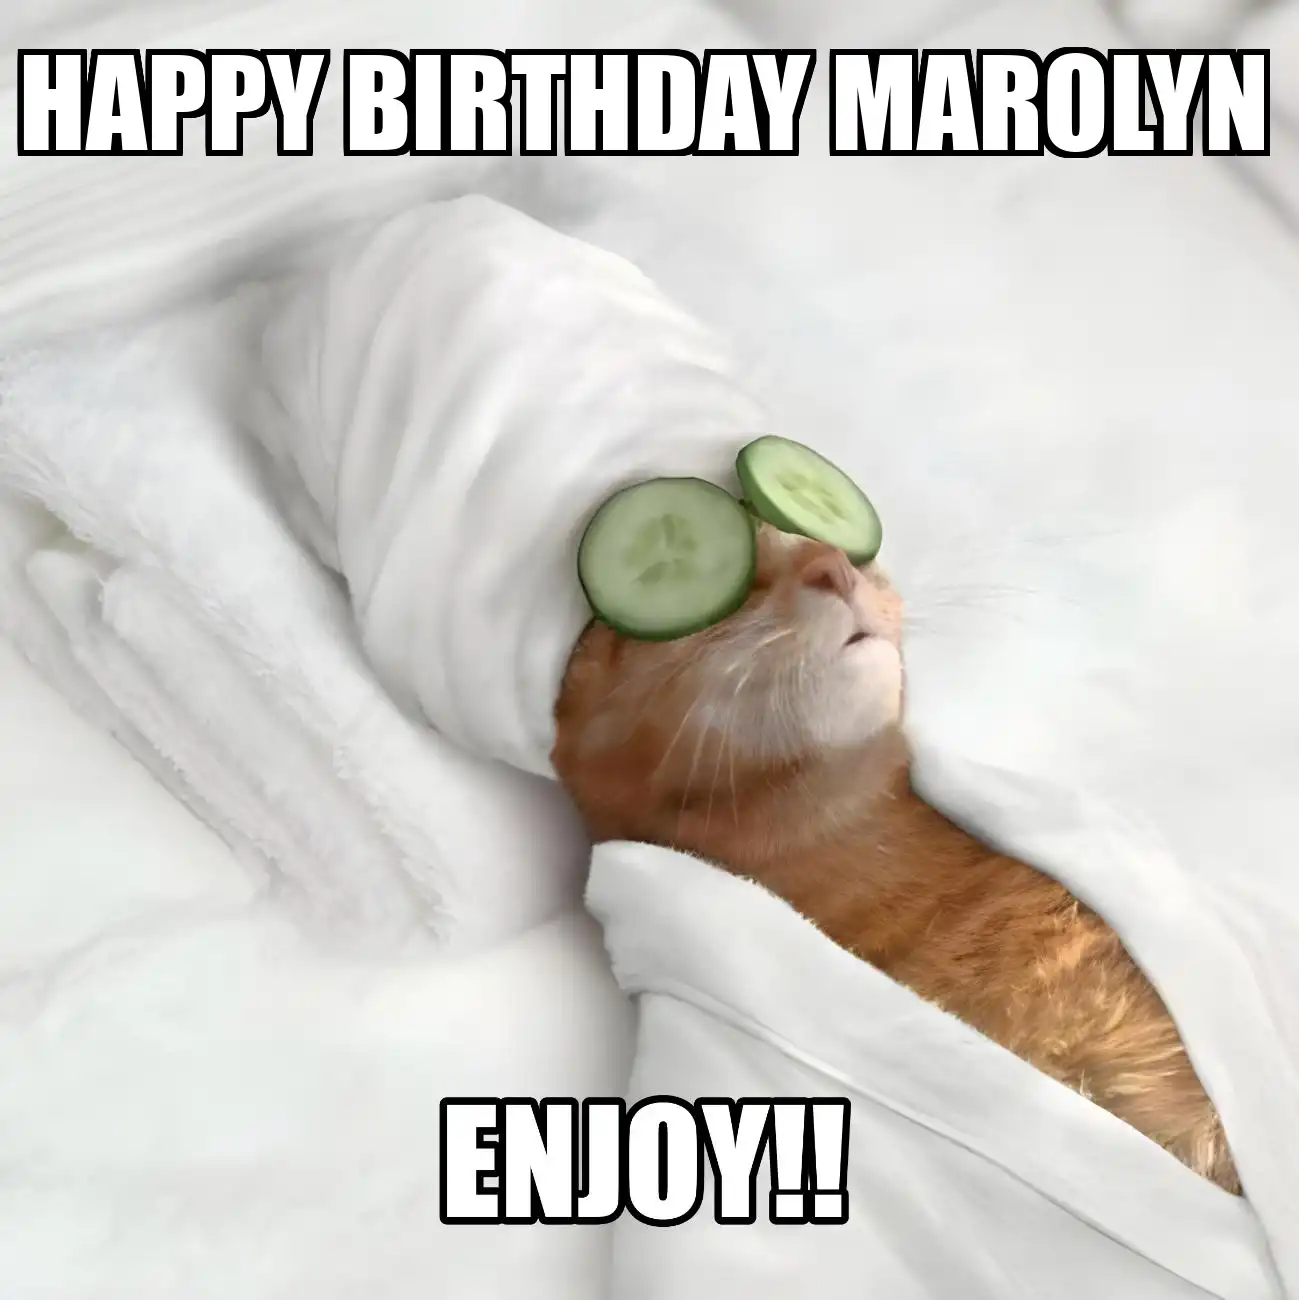 Happy Birthday Marolyn Enjoy Cat Meme